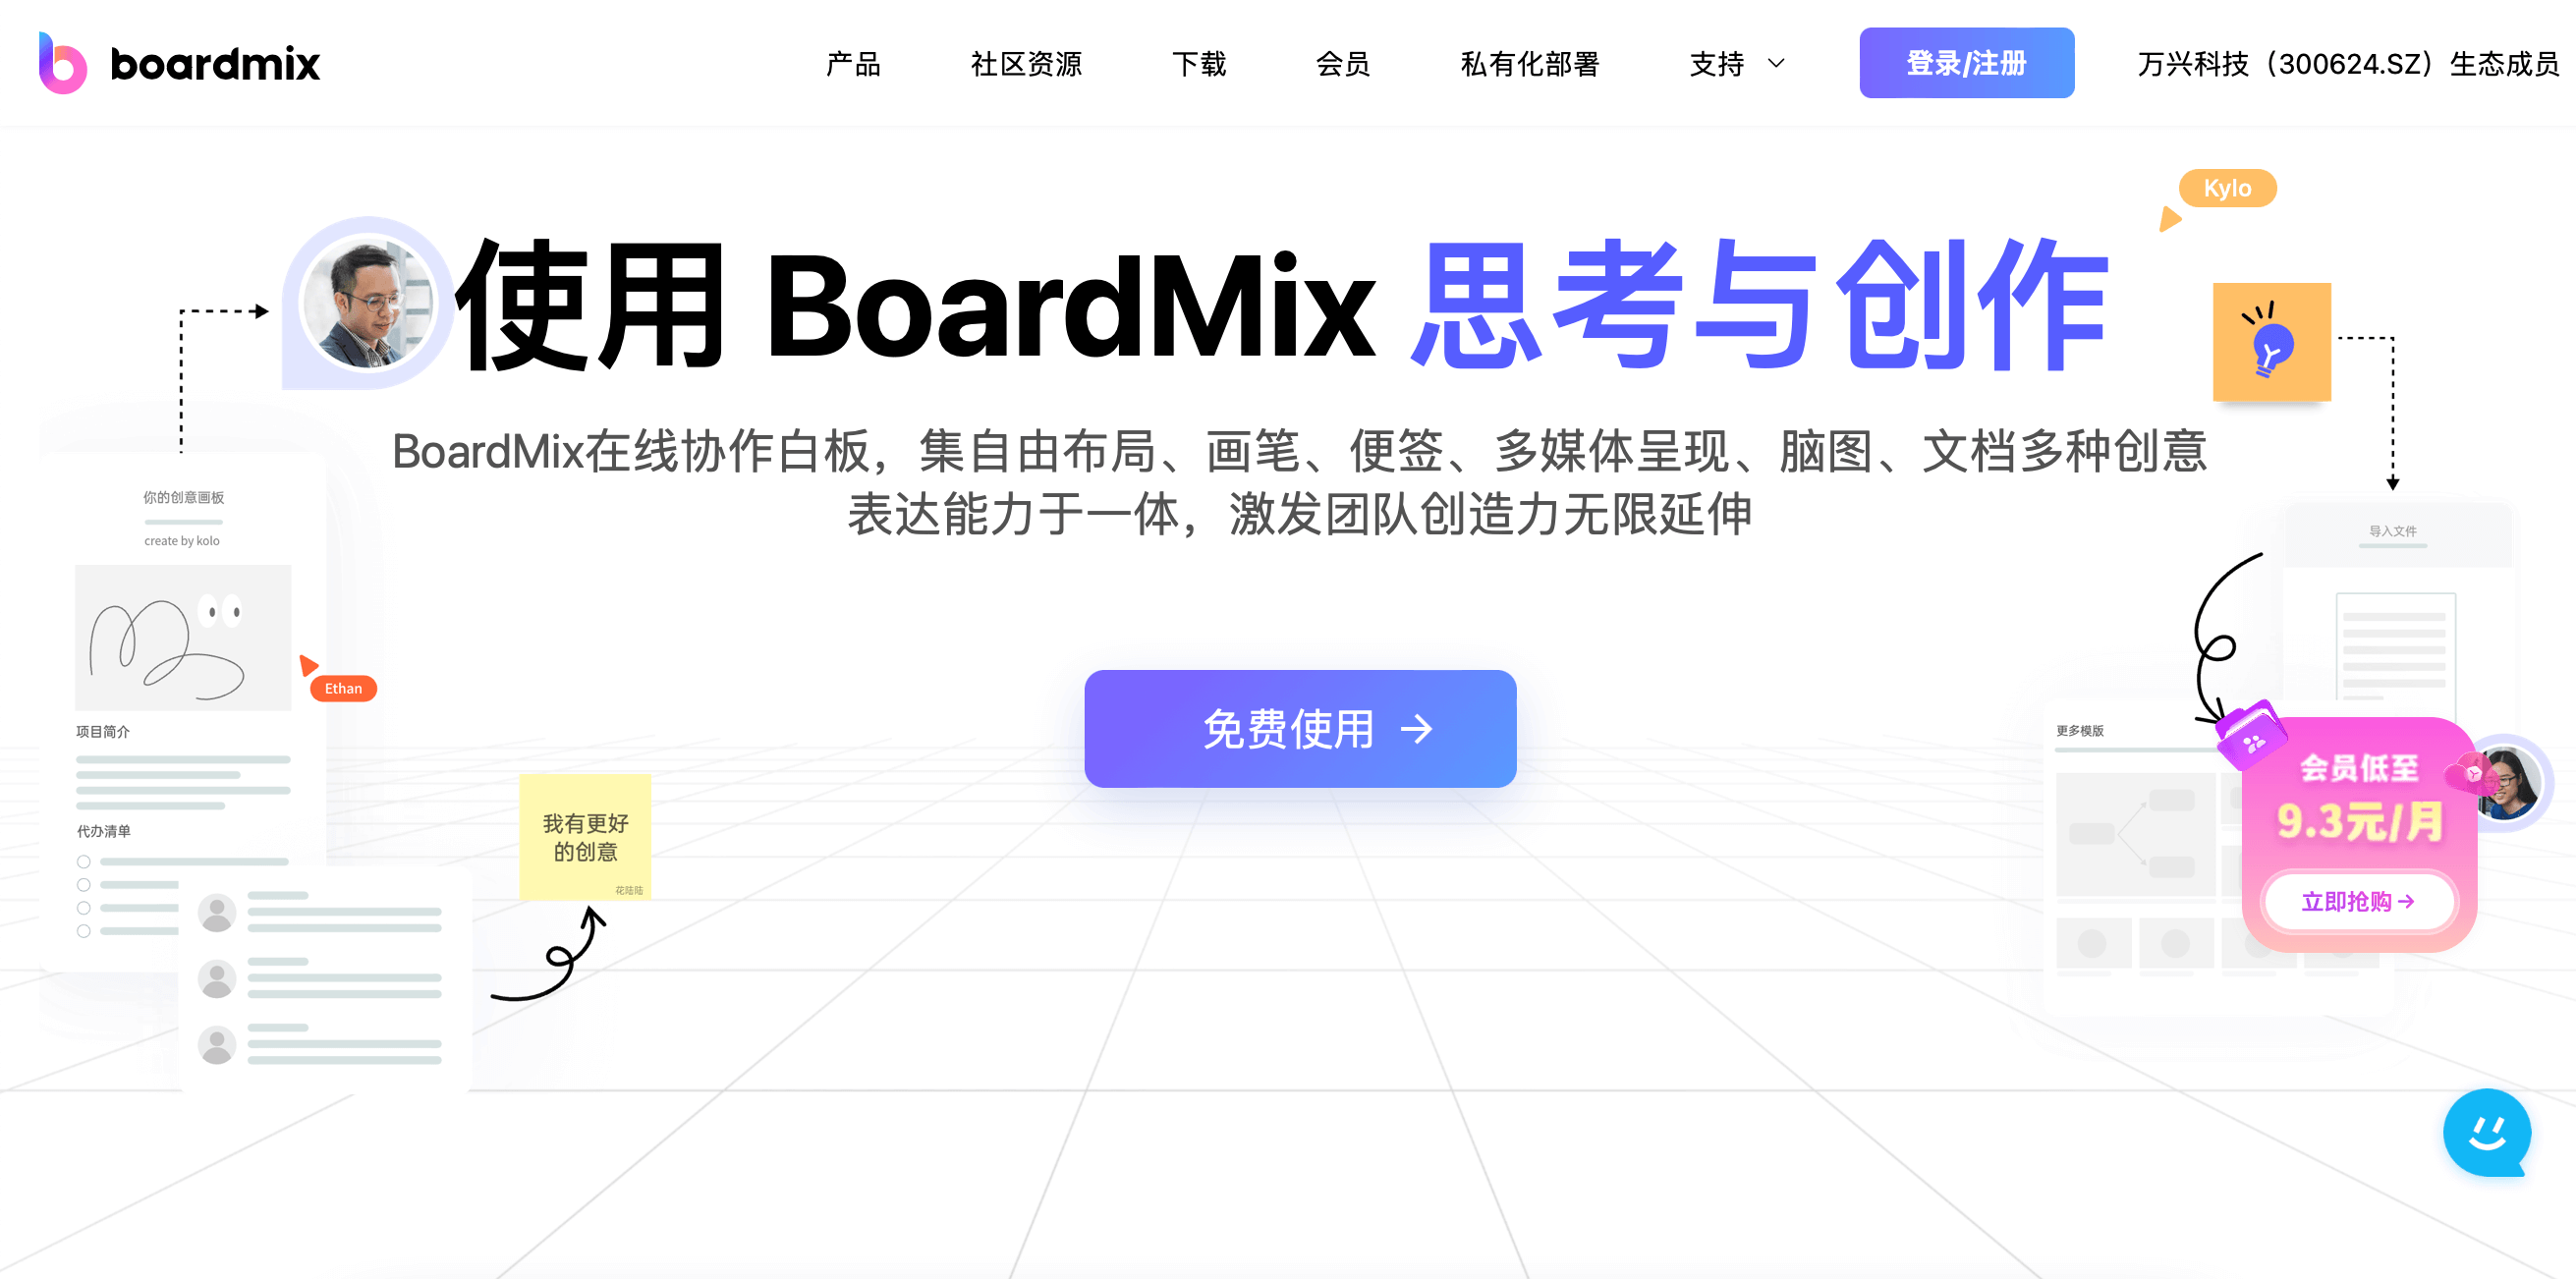 工业设计网站boardmix